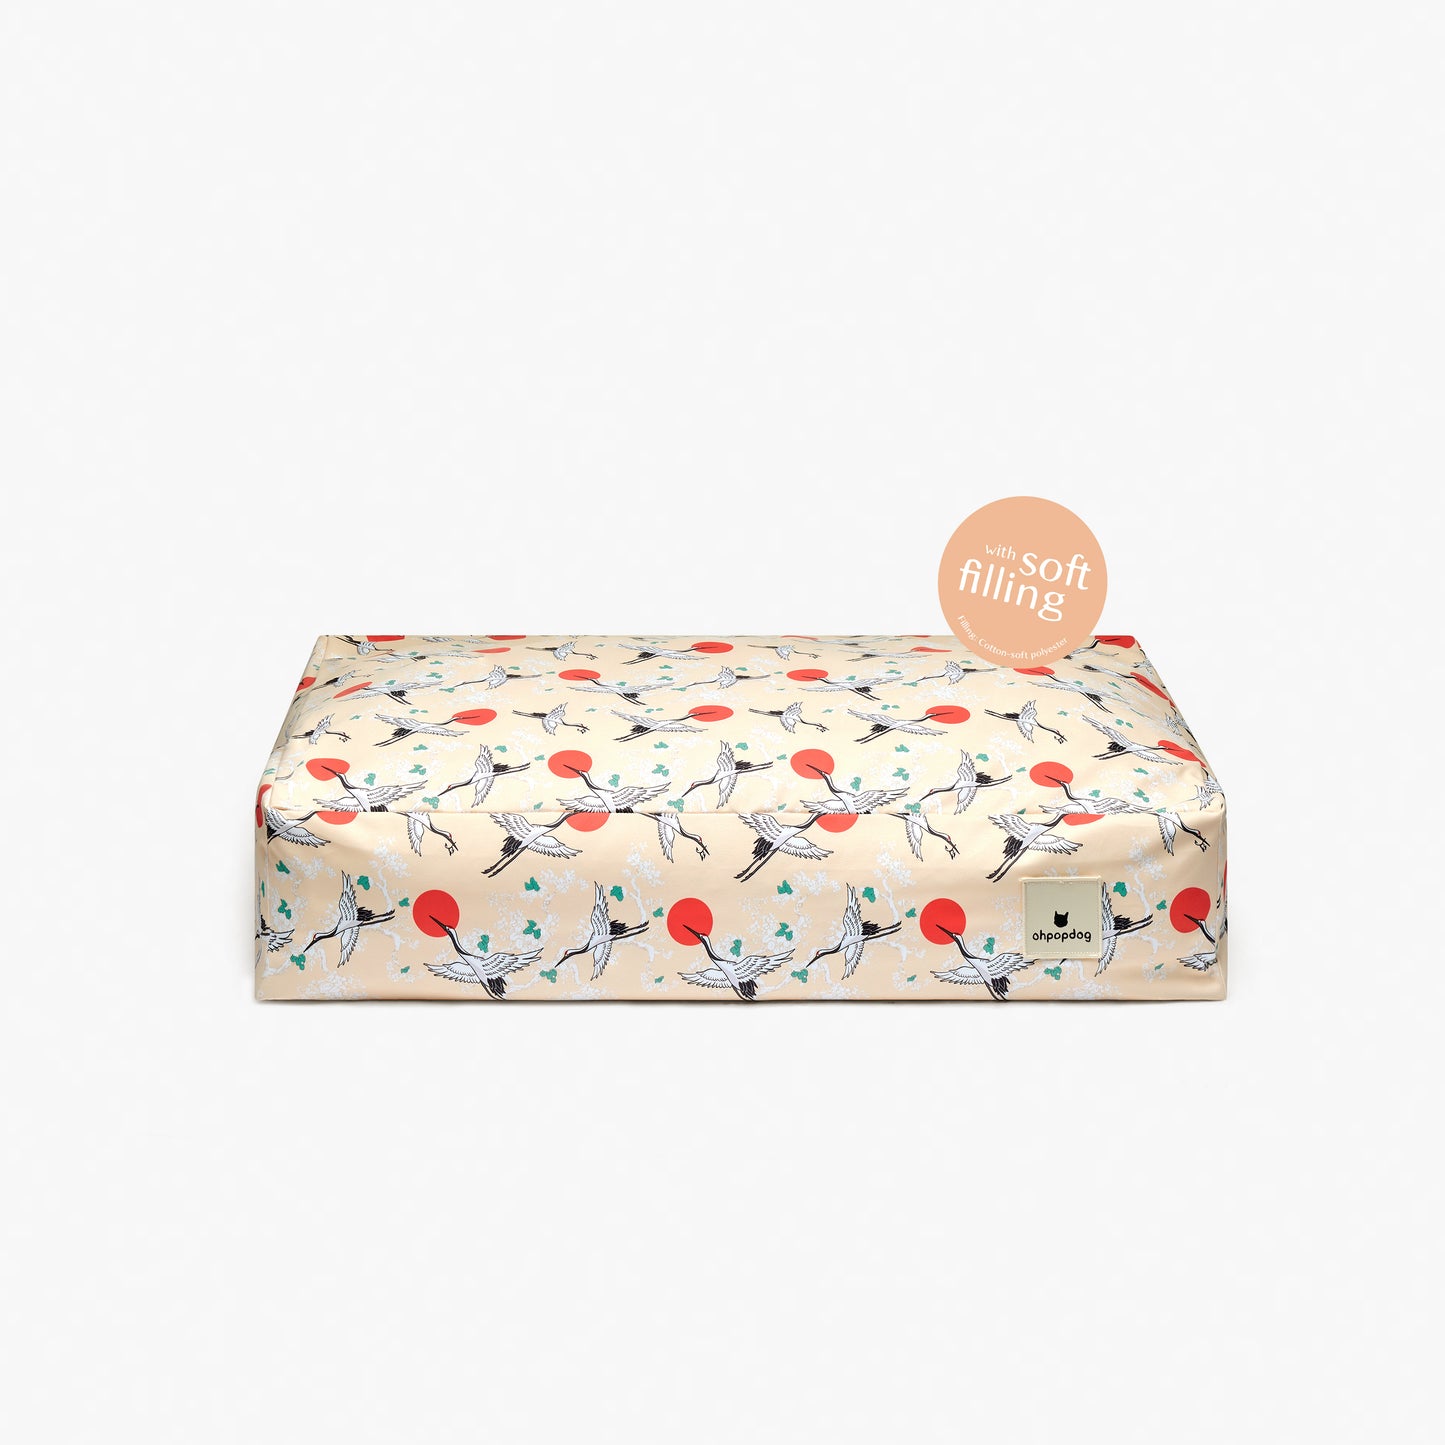 Pillow Bed - Tsuru